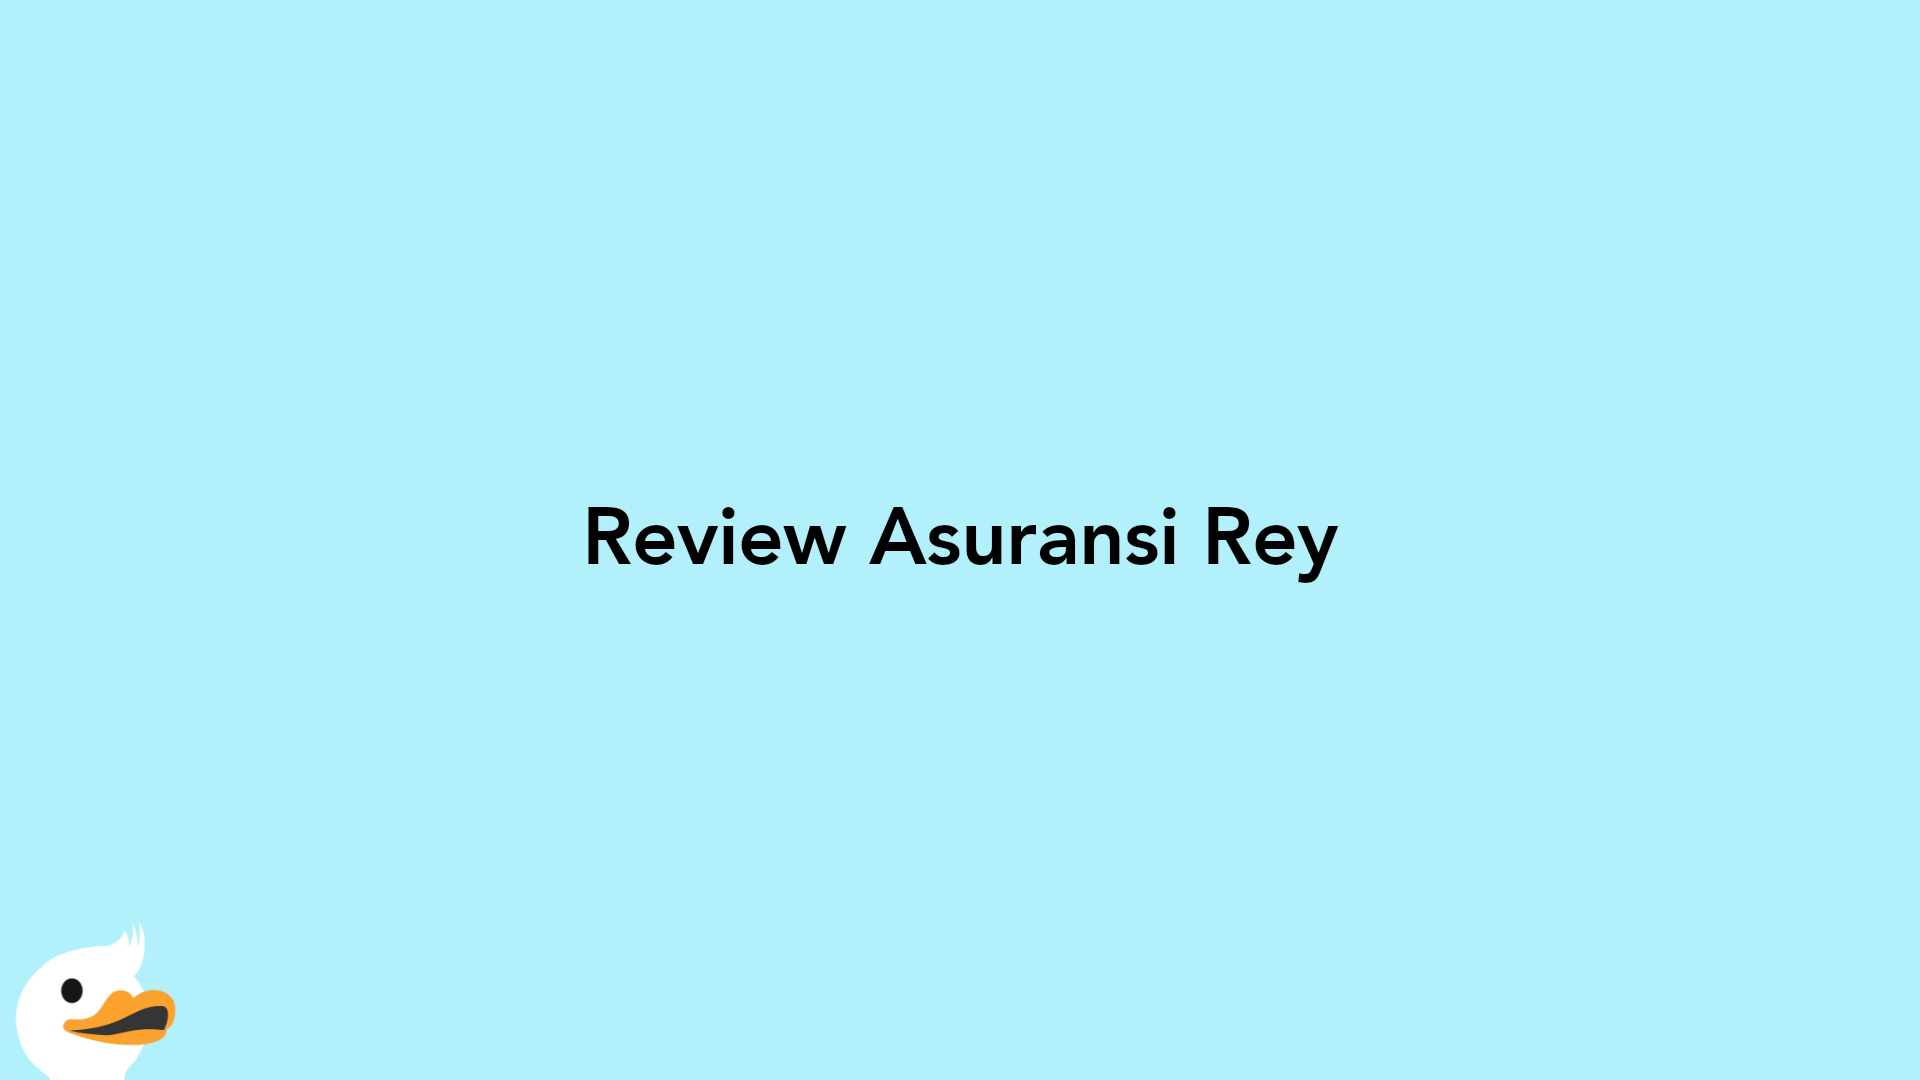 Review Asuransi Rey